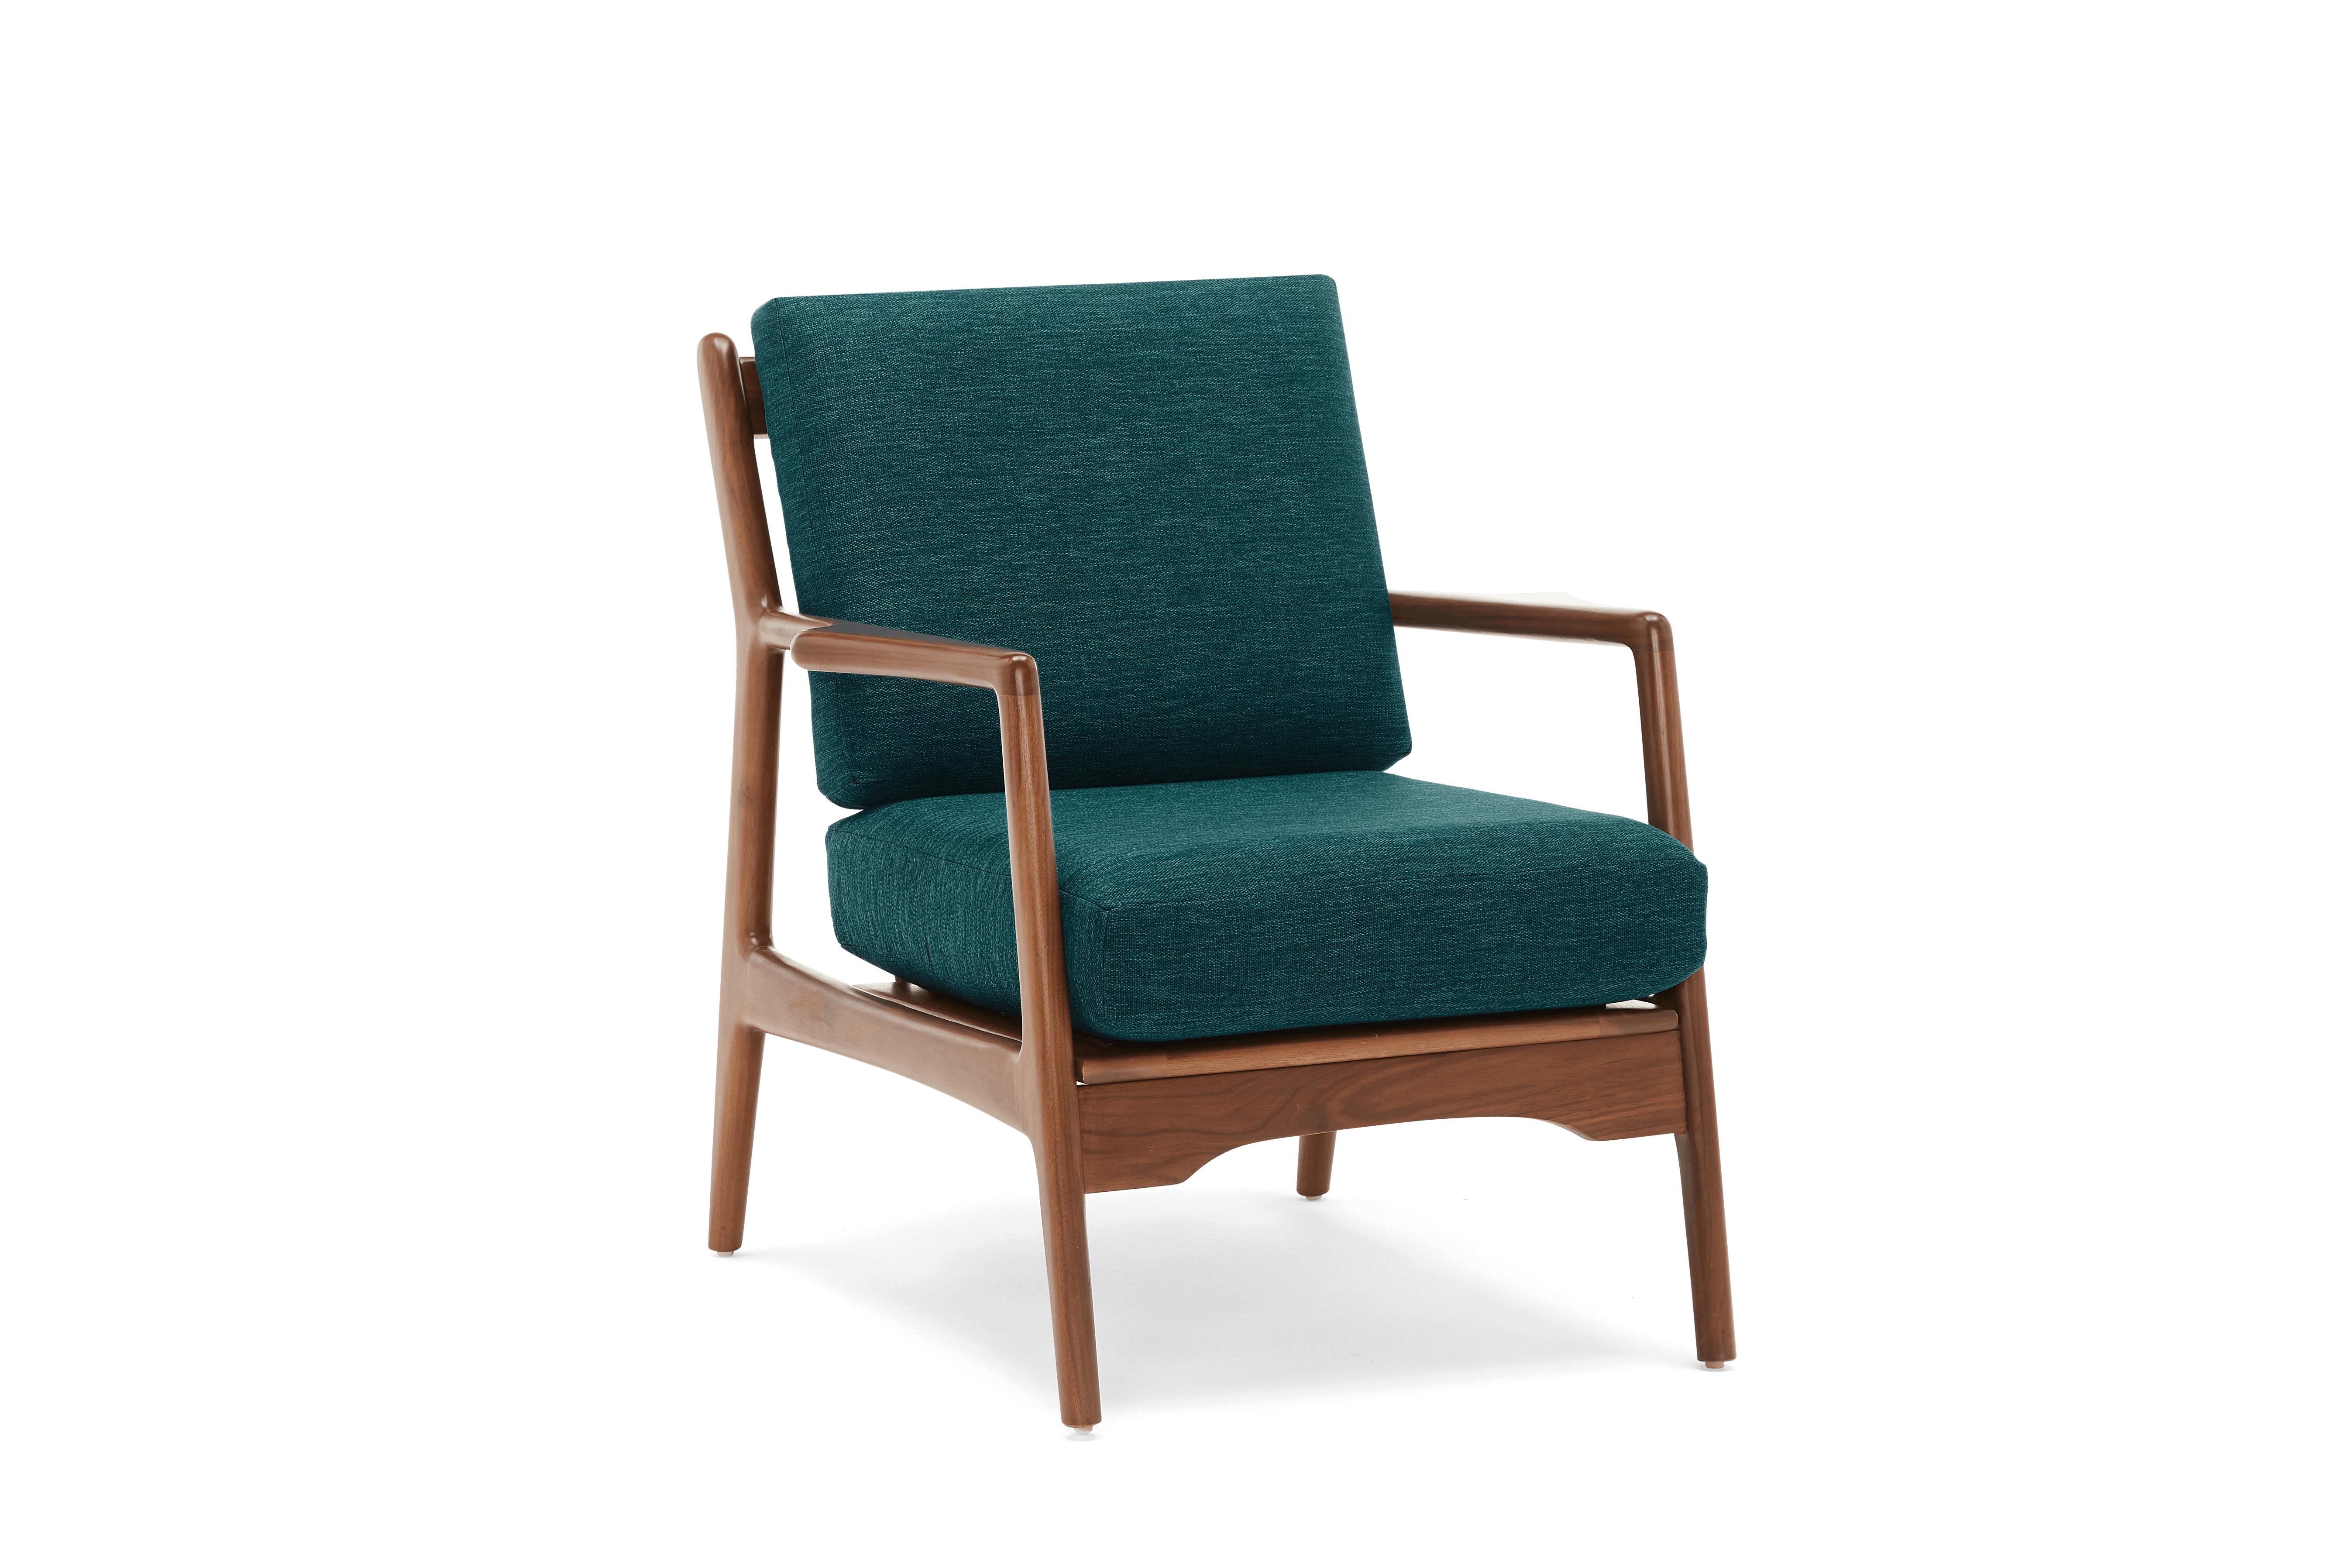 Blue Collins Mid Century Modern Chair - Key Largo Zenith Teal - Walnut - Image 1